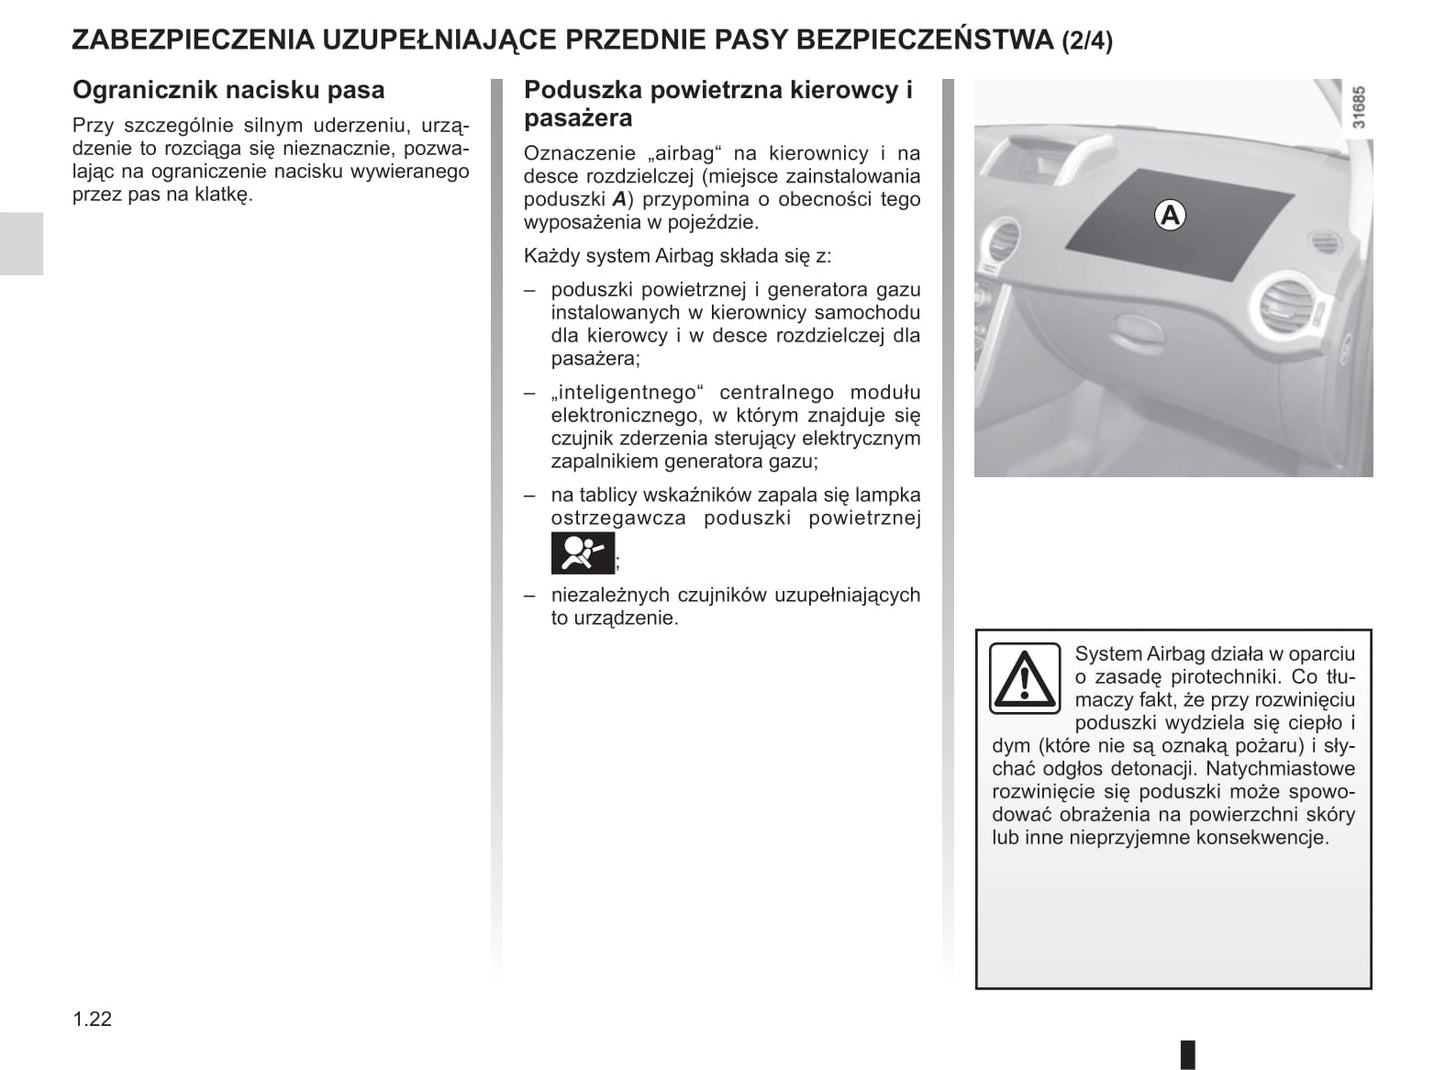 2012-2013 Renault Koleos Gebruikershandleiding | Pools